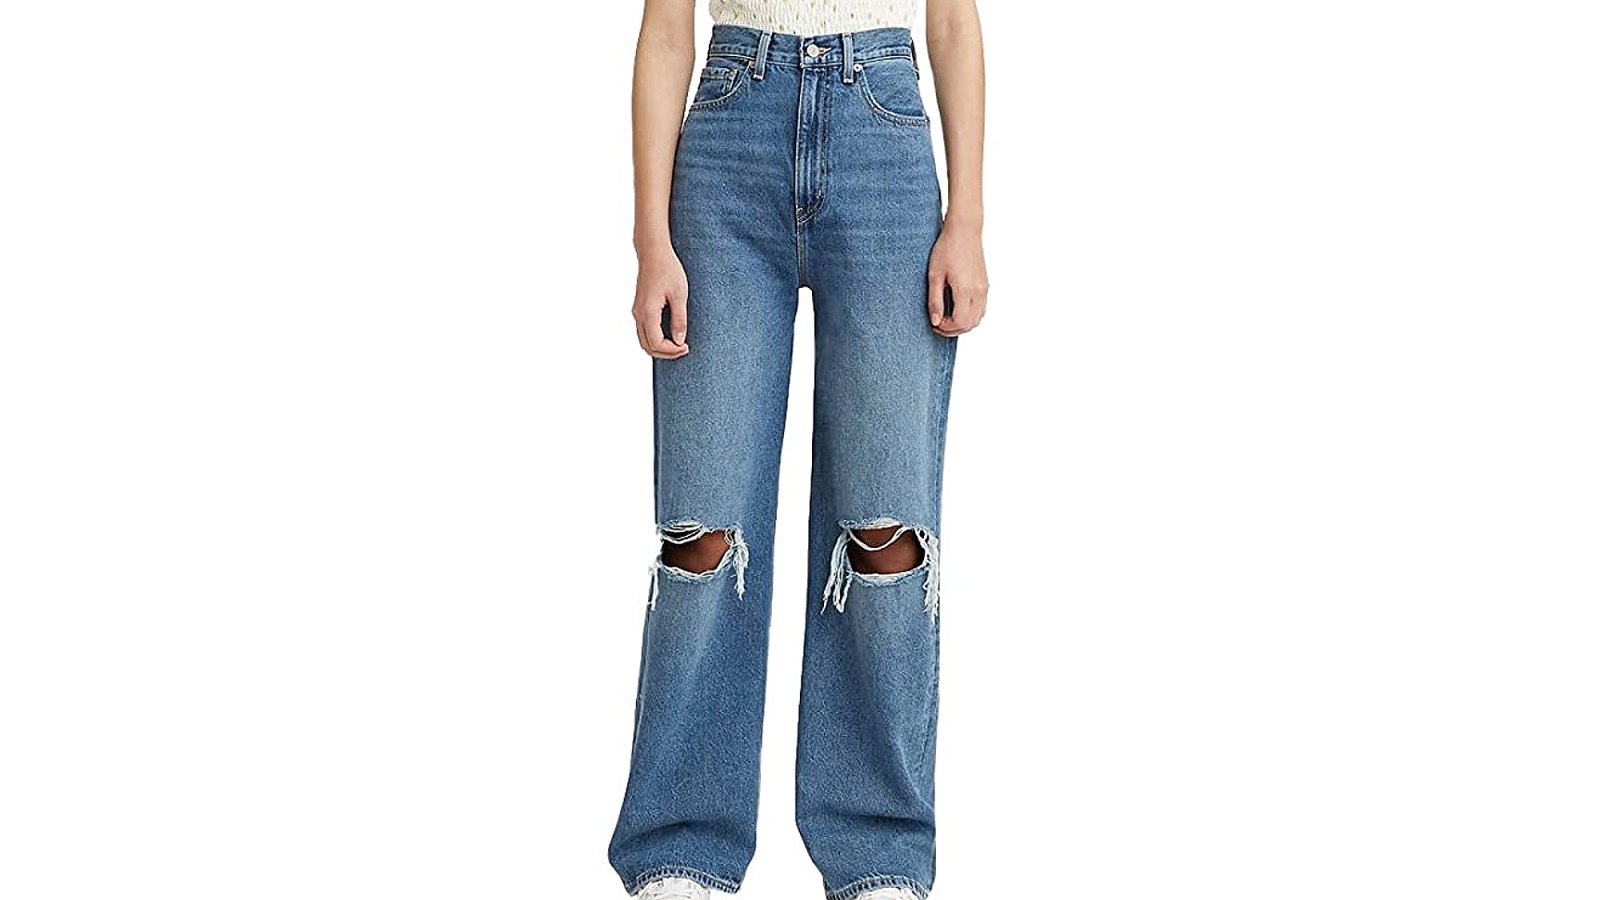 Levi's Retro '90s-Style Jeans 40% Off on Amazon